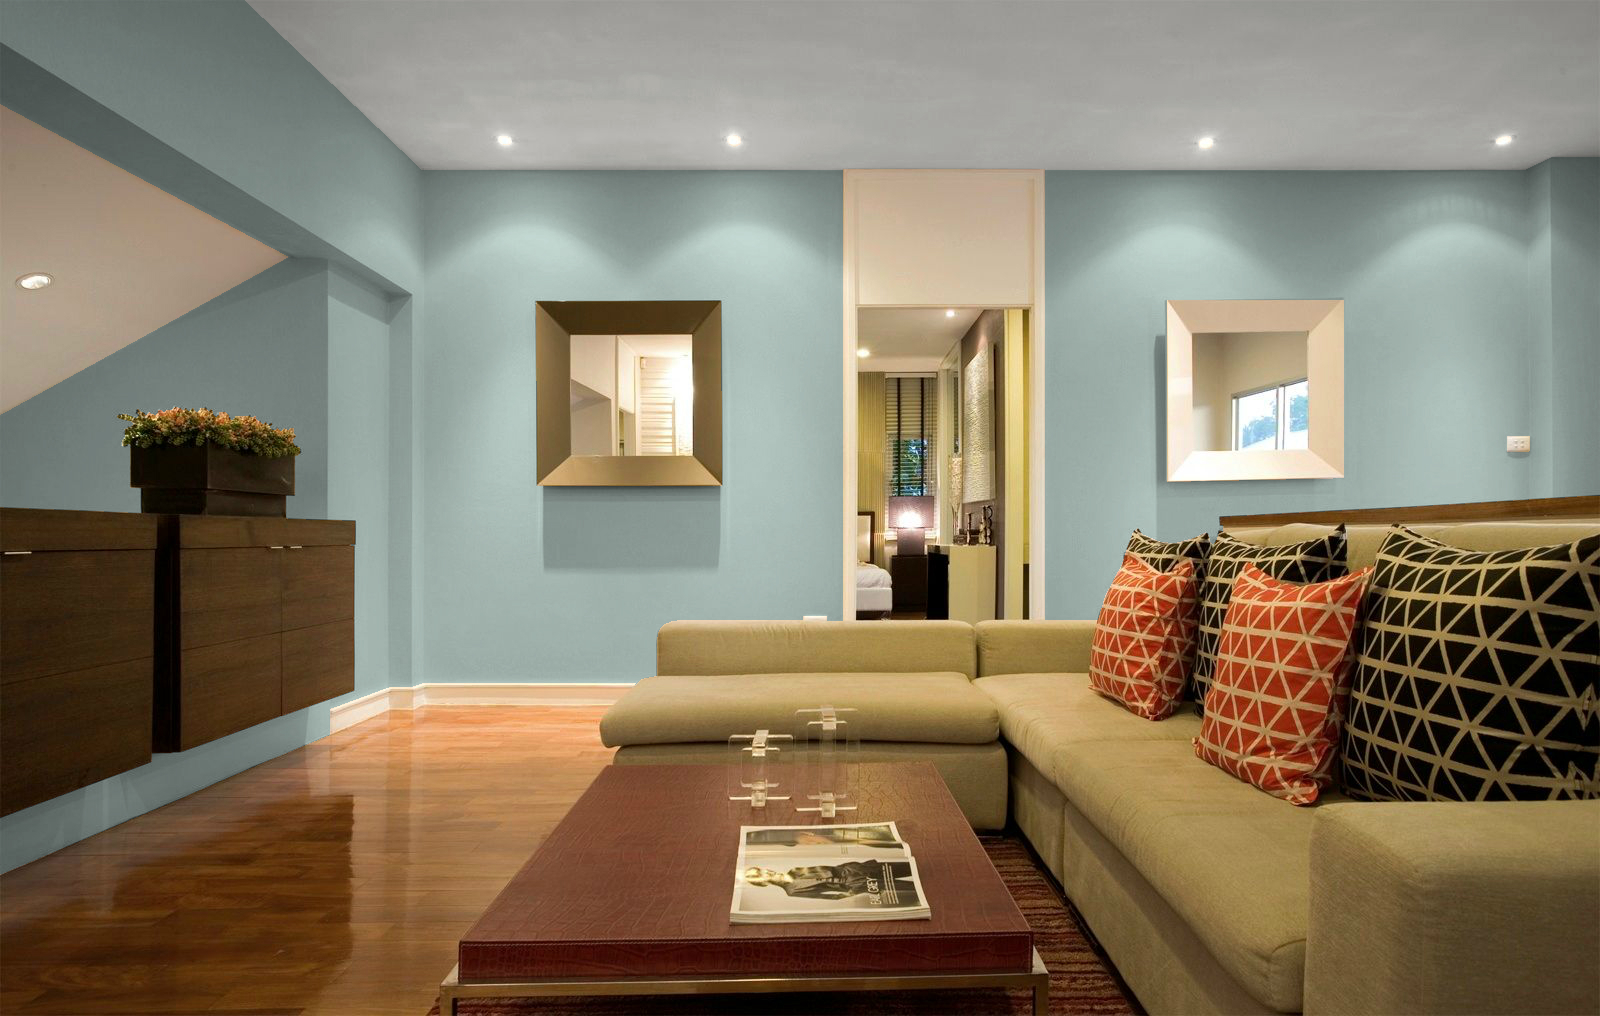 Sơn Dulux là sự lựa chọn hàng đầu của nhiều chủ nhà khi muốn sơn lại nhà. Với chất lượng tốt, độ bền cao và màu sắc đa dạng, sơn Dulux sẽ làm hài lòng bạn và mang đến ngôi nhà đẹp long lanh.